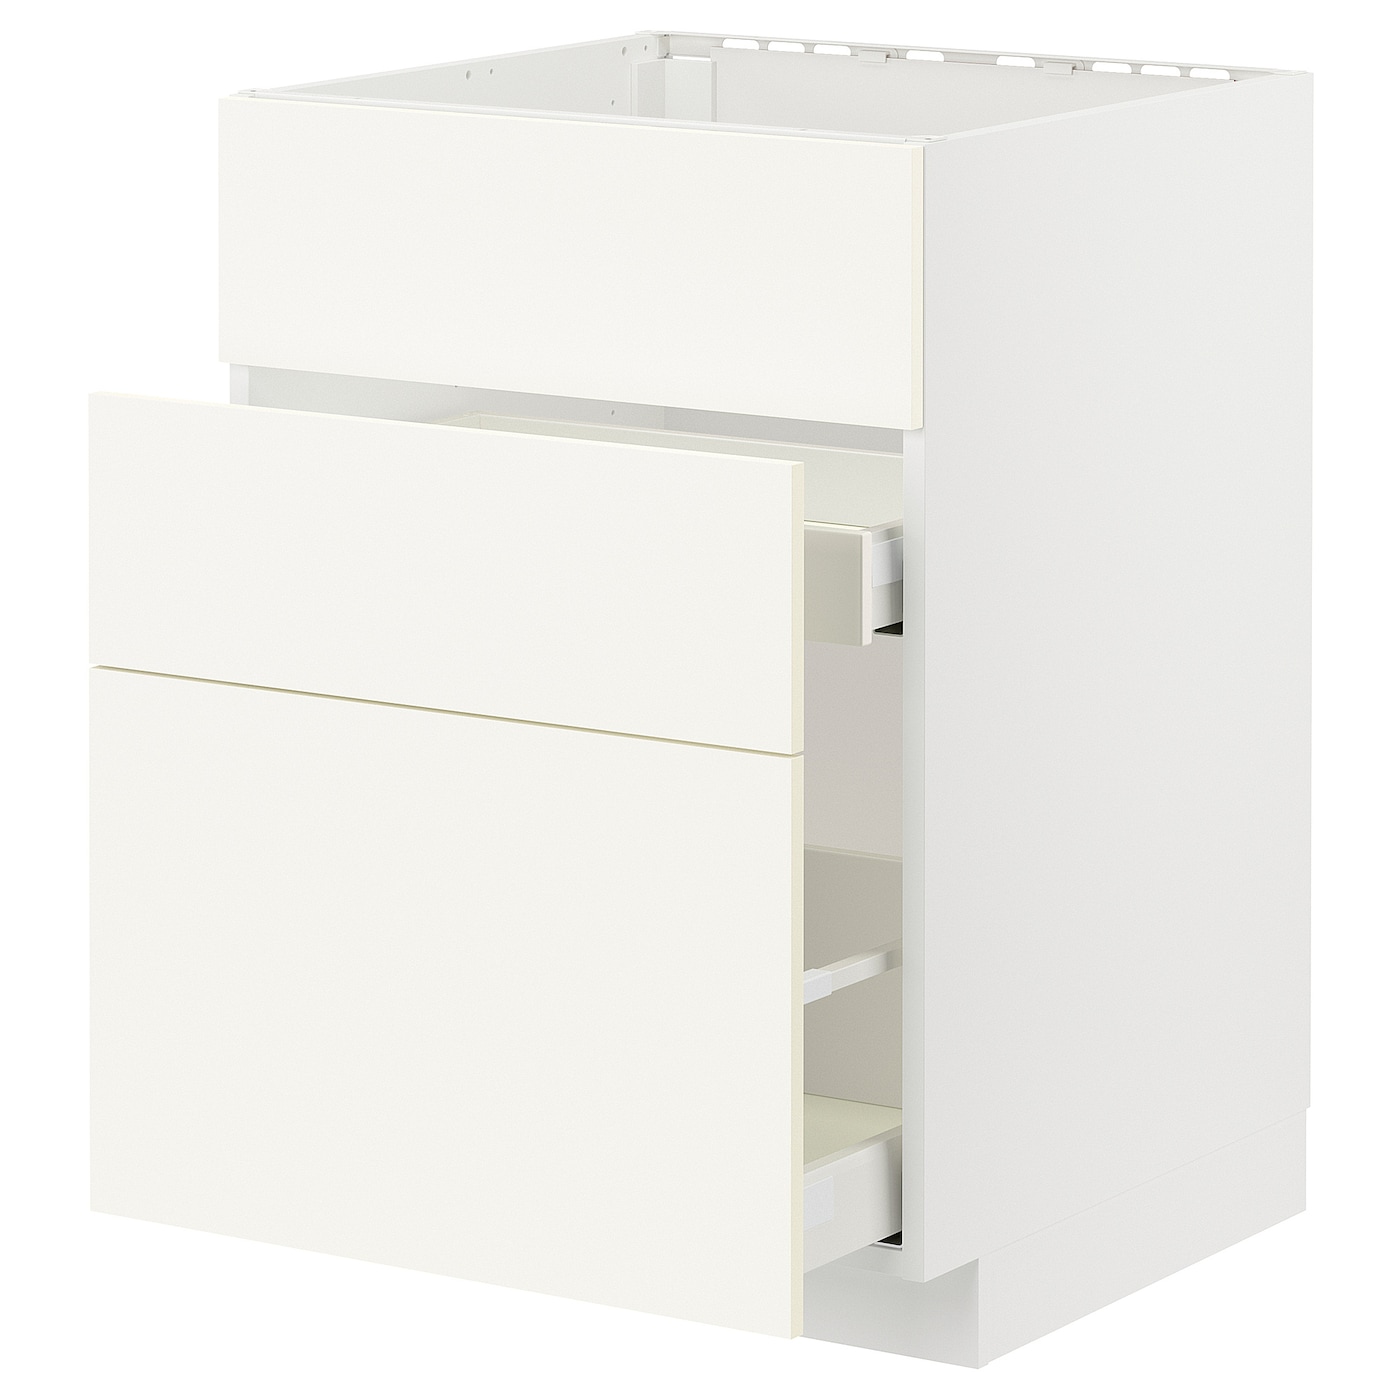 Напольный кухонный шкаф  - IKEA METOD MAXIMERA, 88x61,6x60см, белый, МЕТОД МАКСИМЕРА ИКЕА